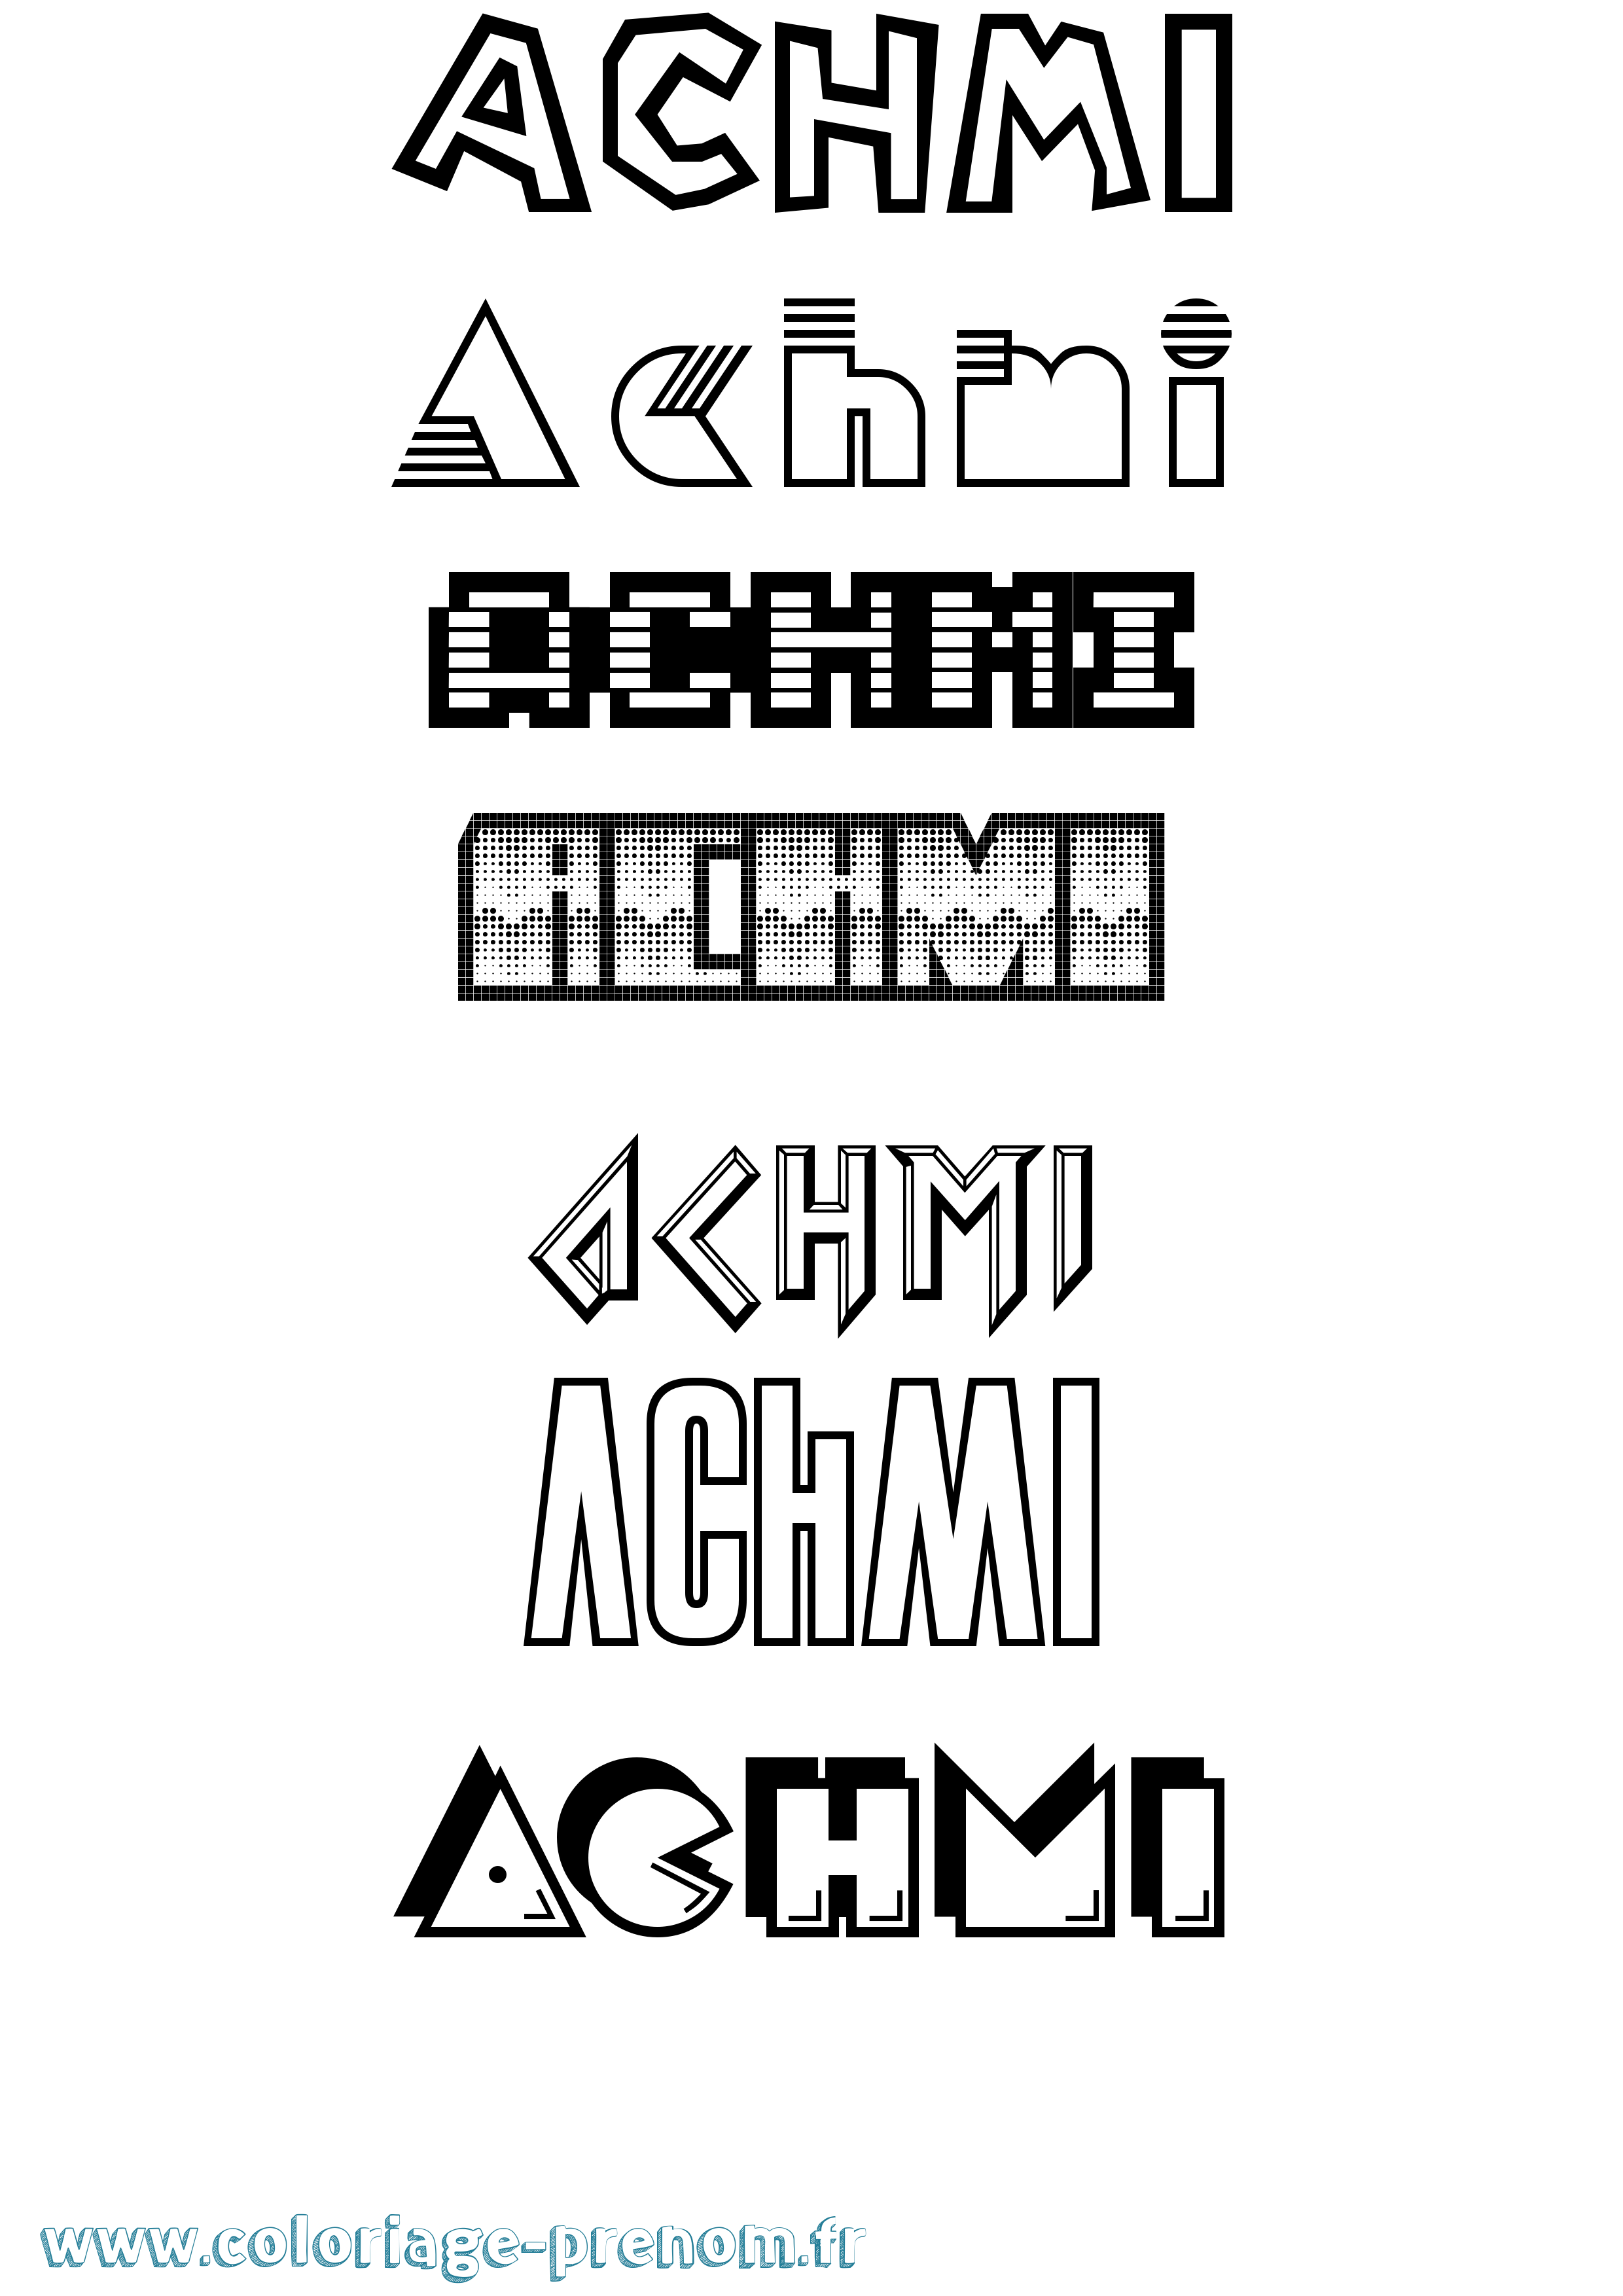 Coloriage prénom Achmi Jeux Vidéos